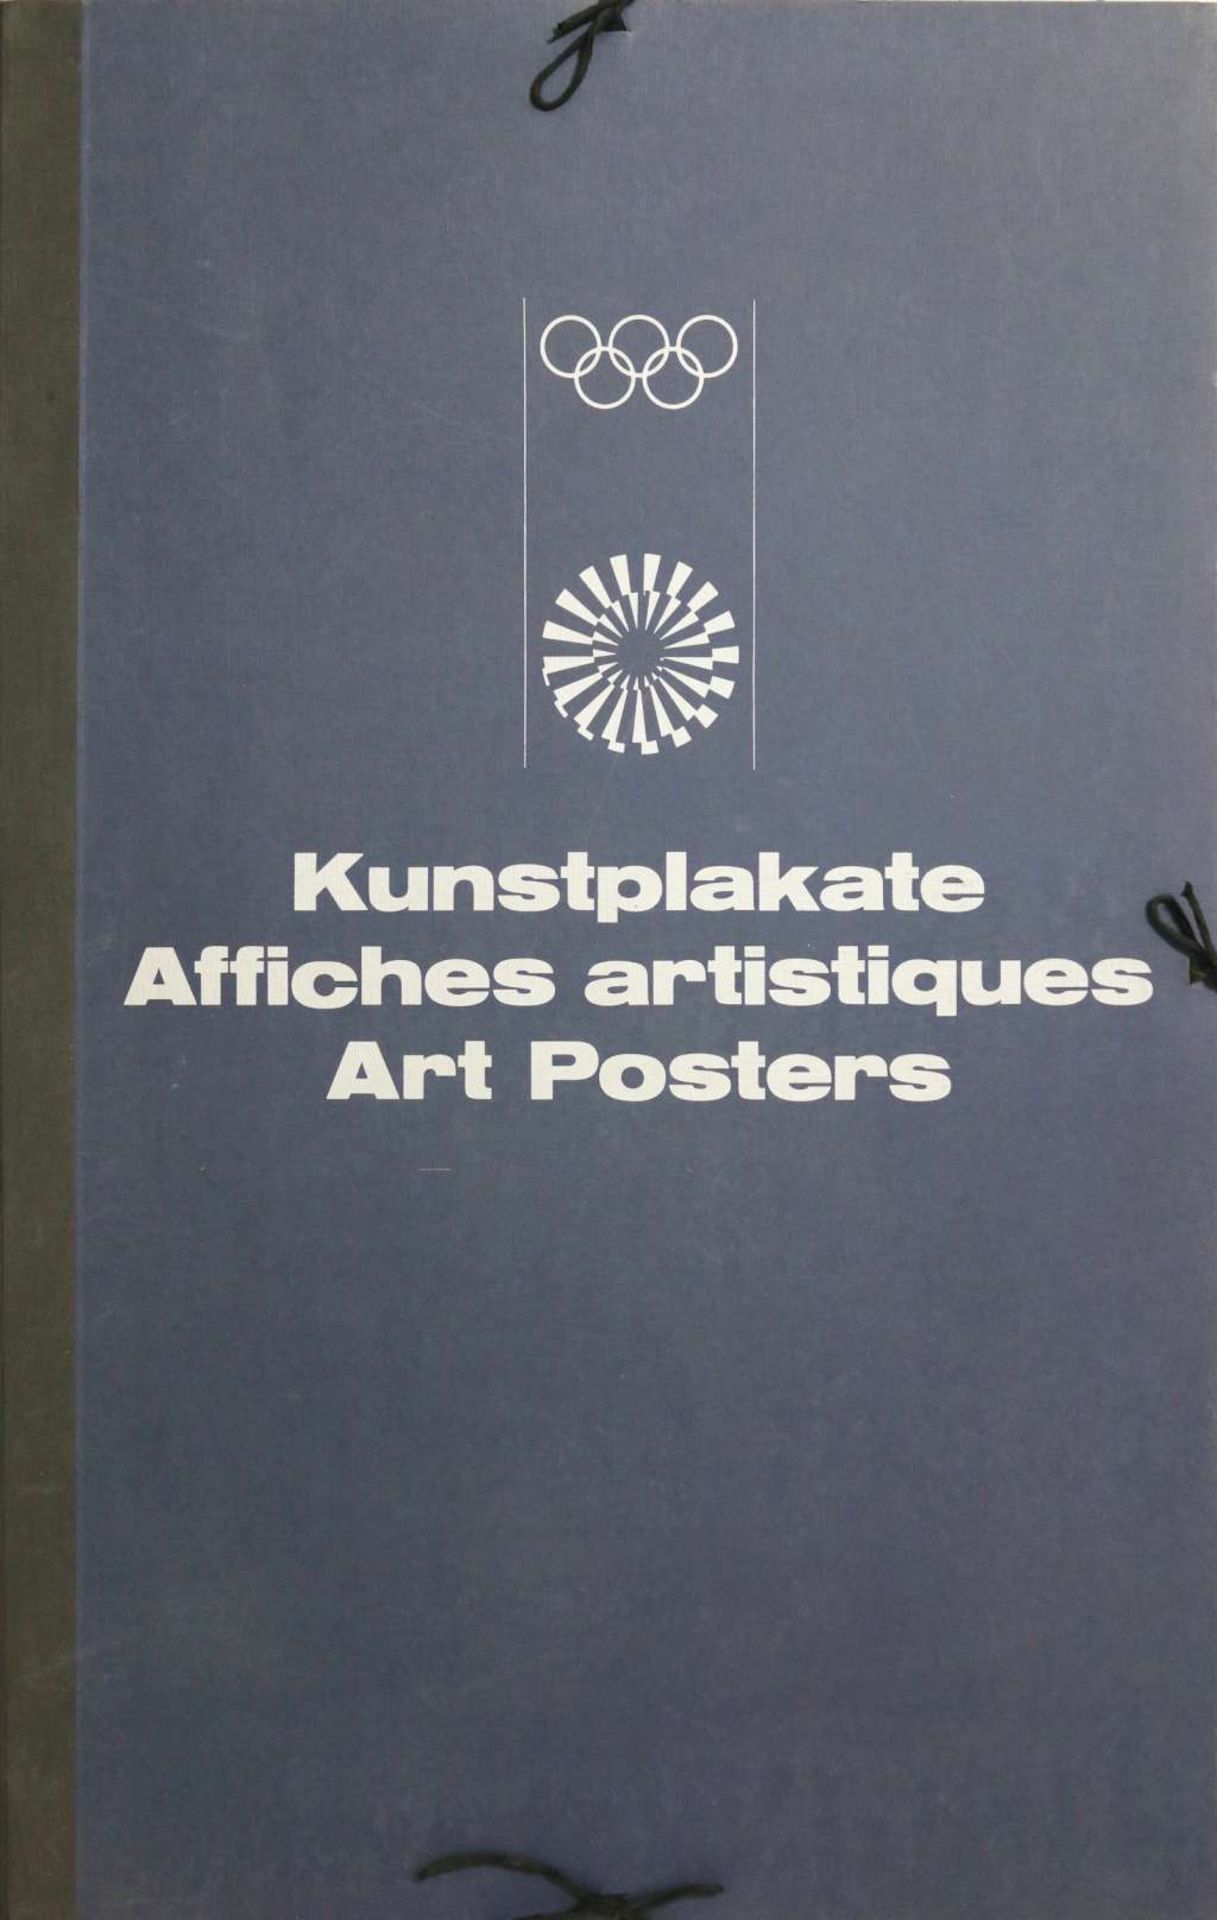 21 Kunstplakate "Olympische Spiele München 1972"